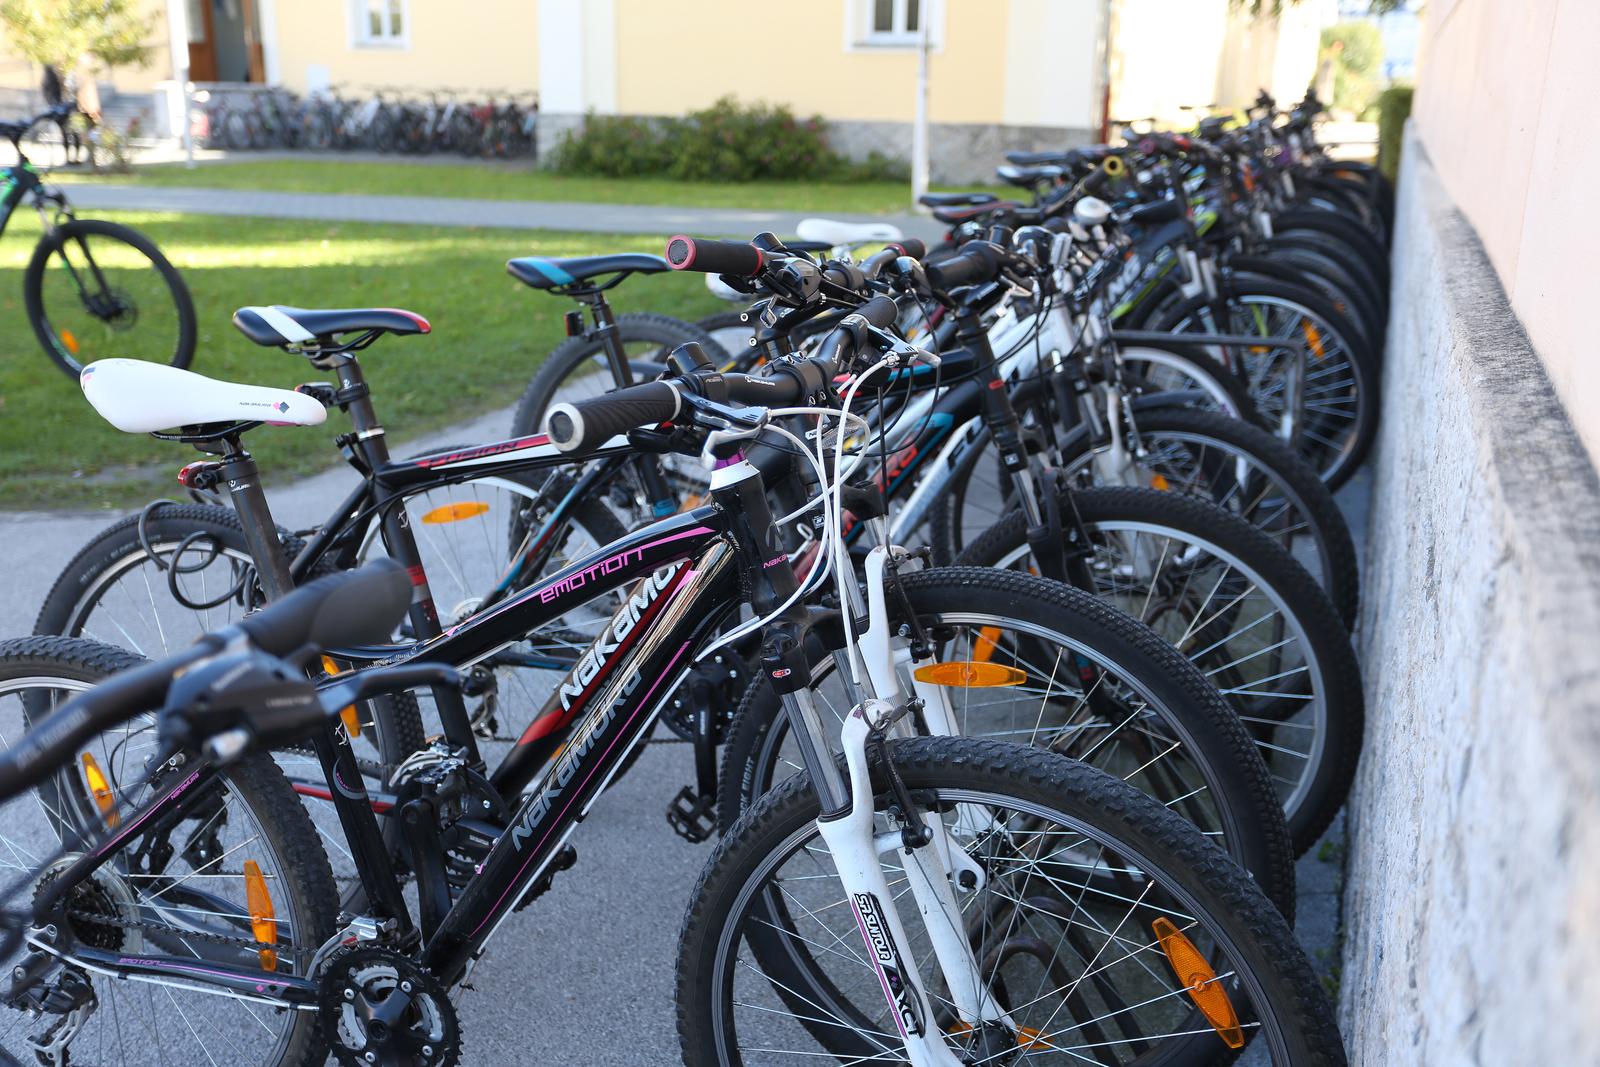 "Parkirani" bicikli 28.09.2018 Karlovac - Bicikli na vezu. rPhoto: Kristina Stedul Fabac/PIXSELL